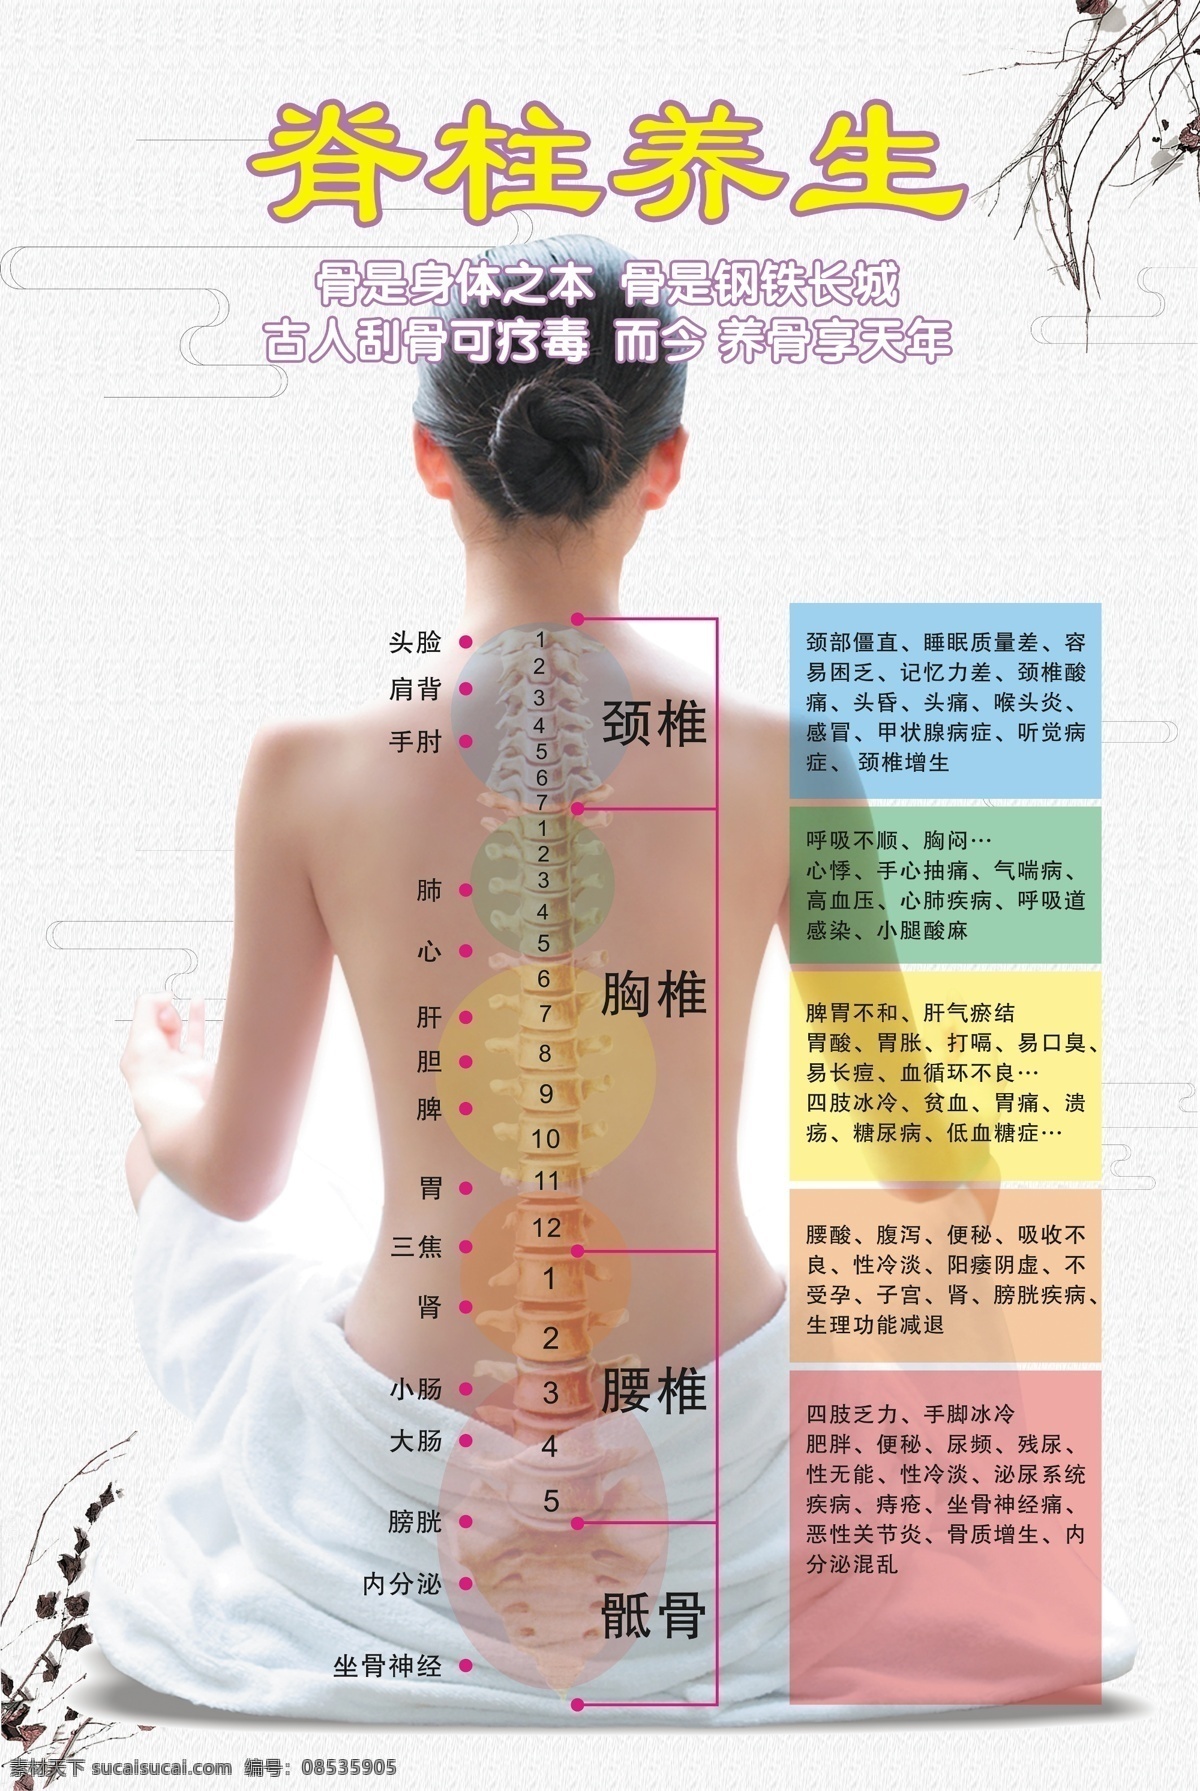 脊柱养生图 脊柱 养生 中医 胸椎 颈椎 腰椎 展板模板